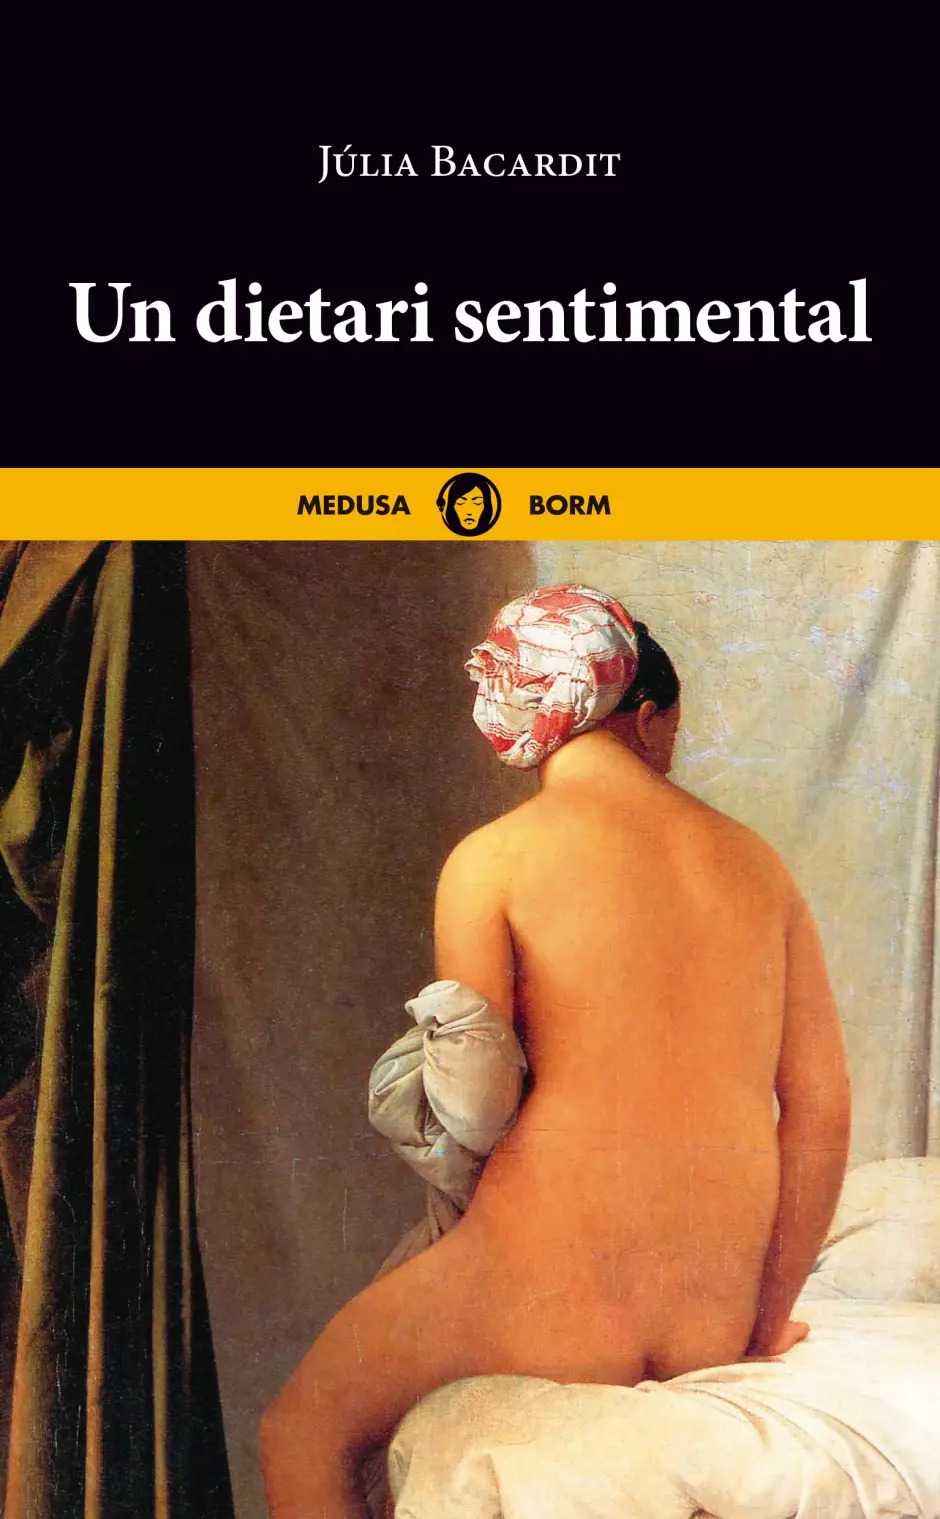 'Un dietari sentimental' es el nuevo libro de Júlia Bacardit